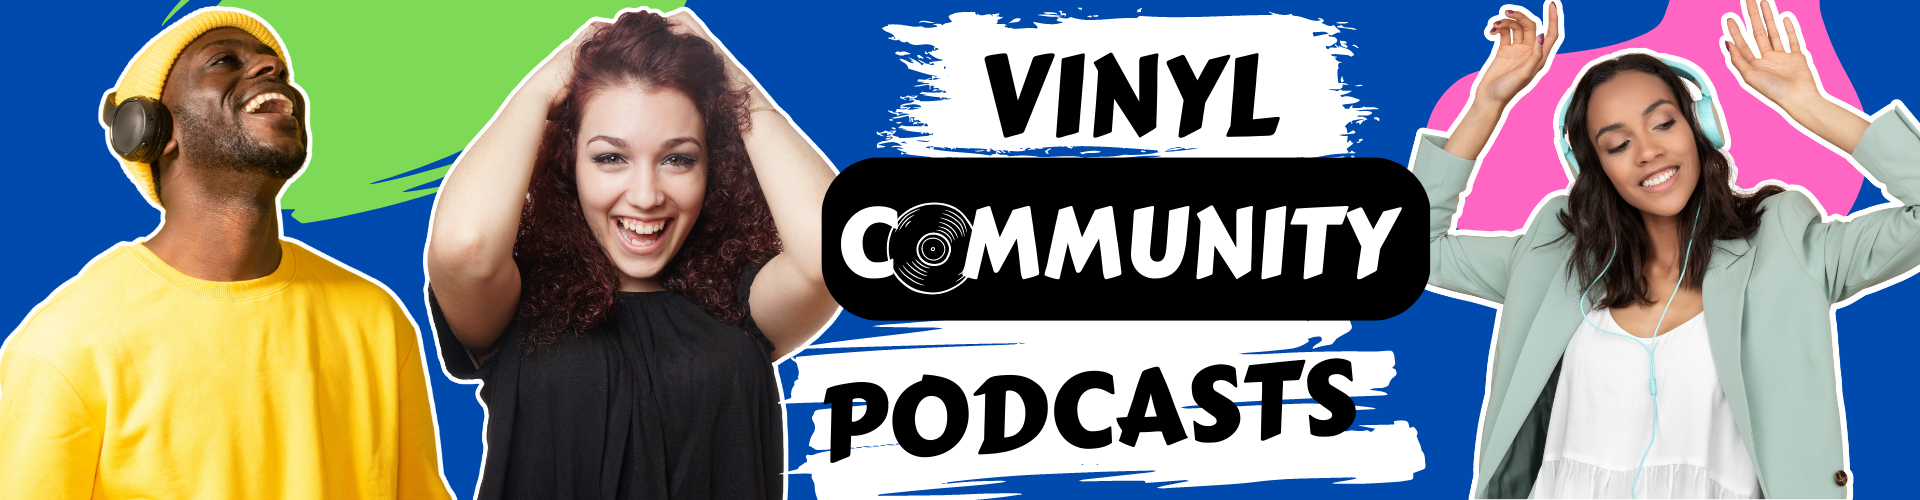 Vinyl Community Podcasts podcast by vinylcommunitypodcasts